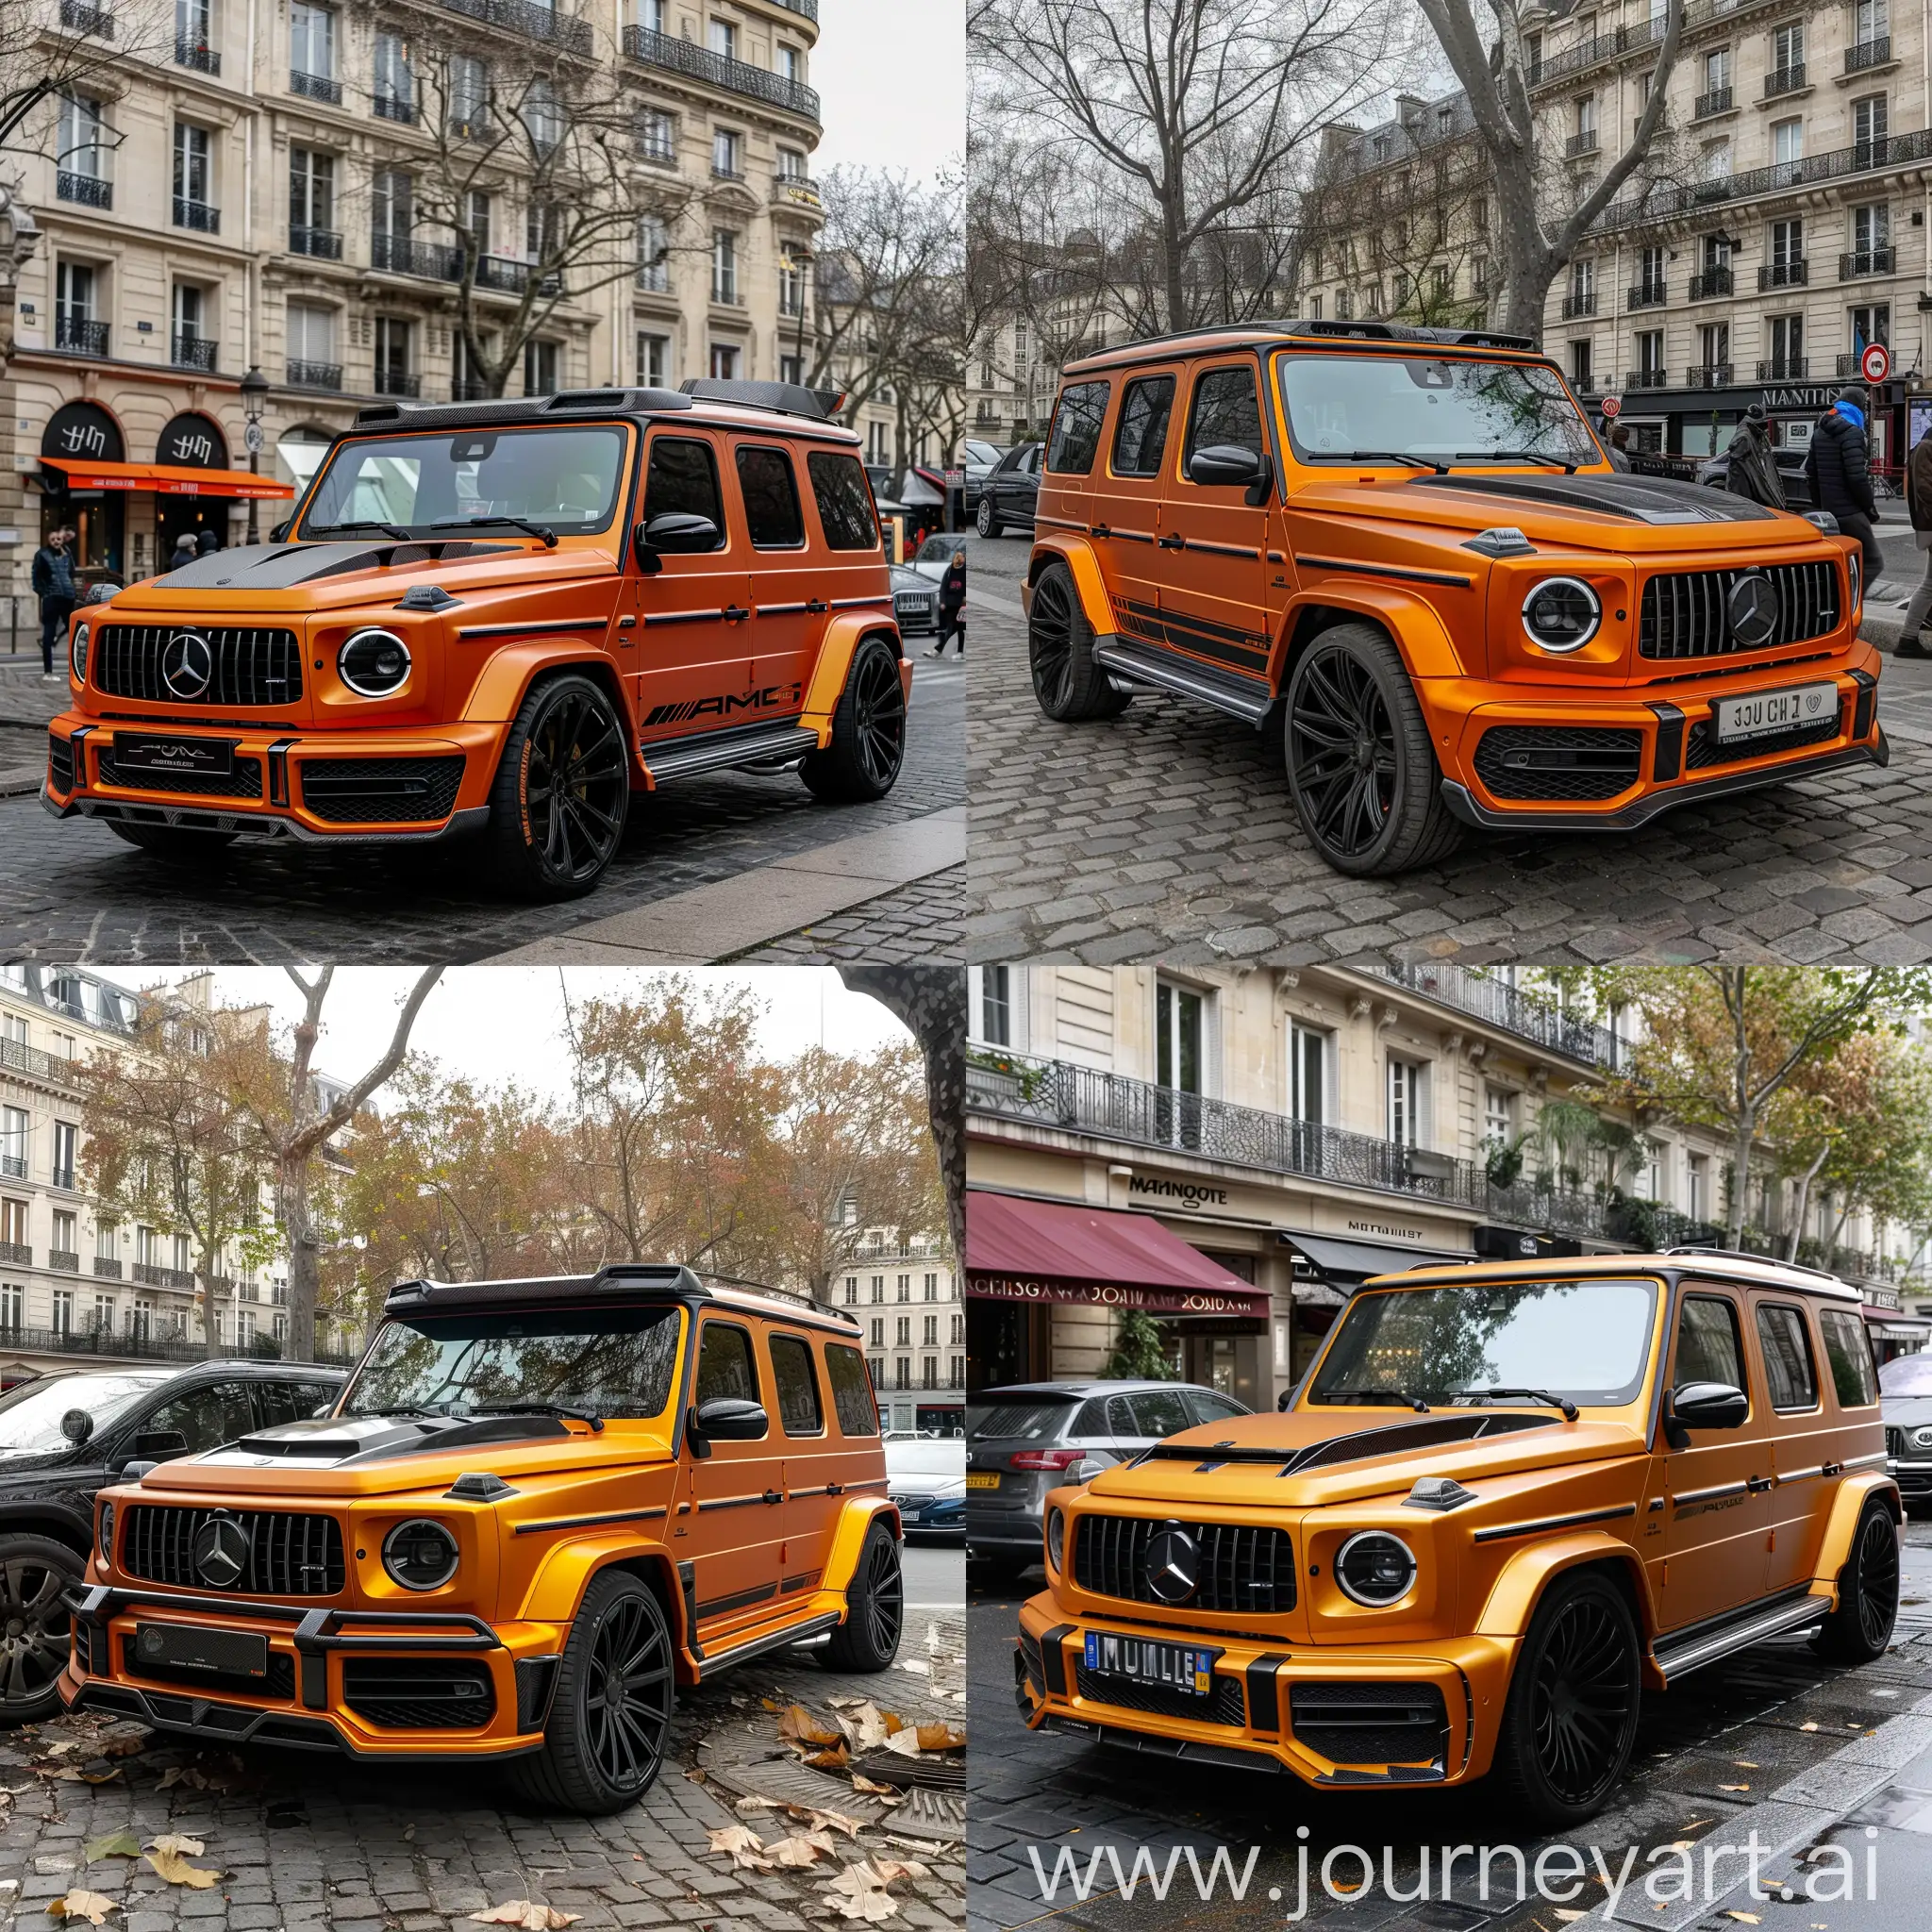 Luxury-Orange-MansoryTuned-Mercedes-G63-Wagon-in-Paris-City-Center